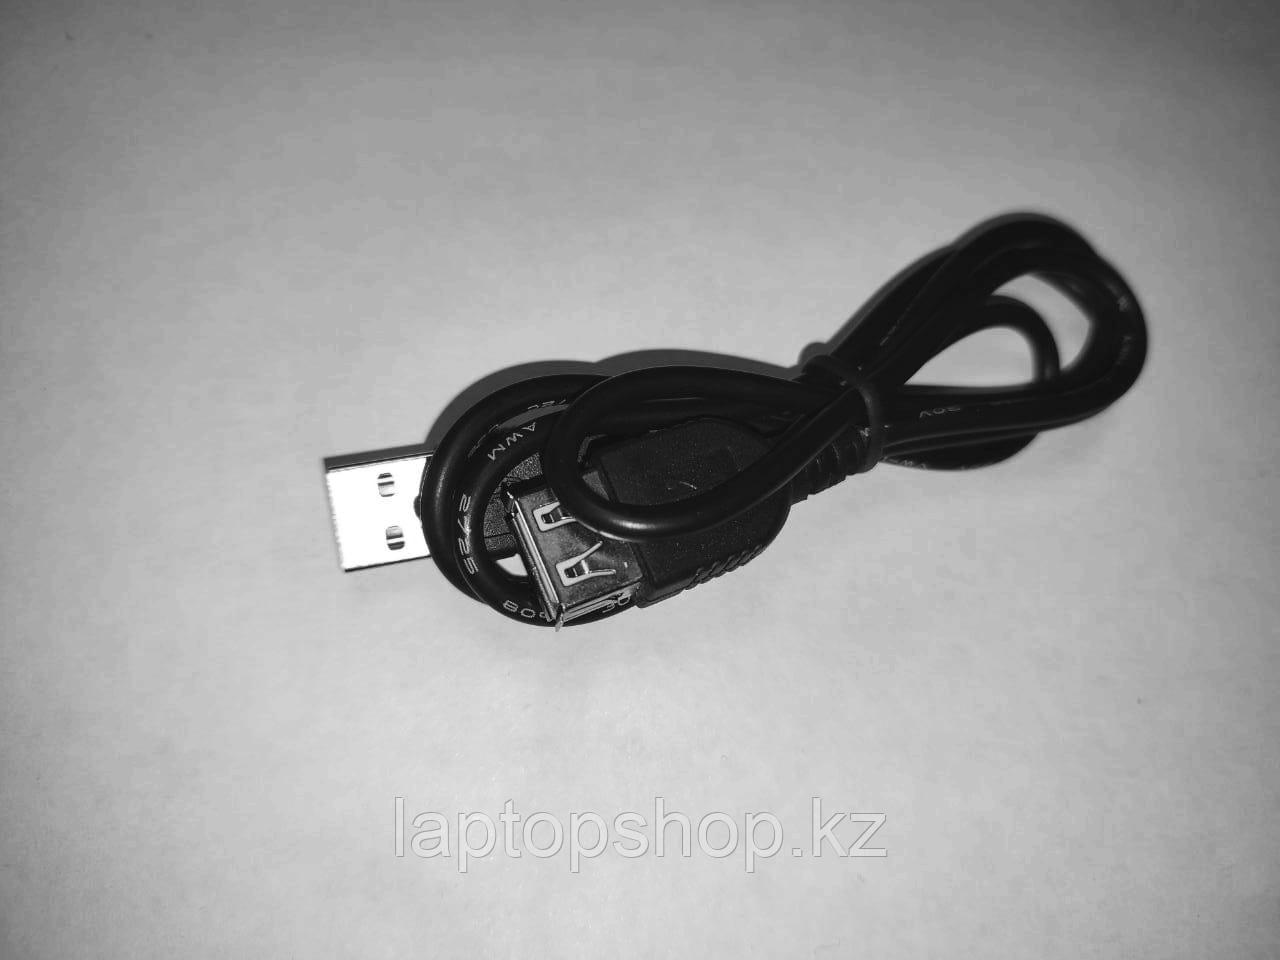 Удлинитель Cable USB AM-AF 50cm